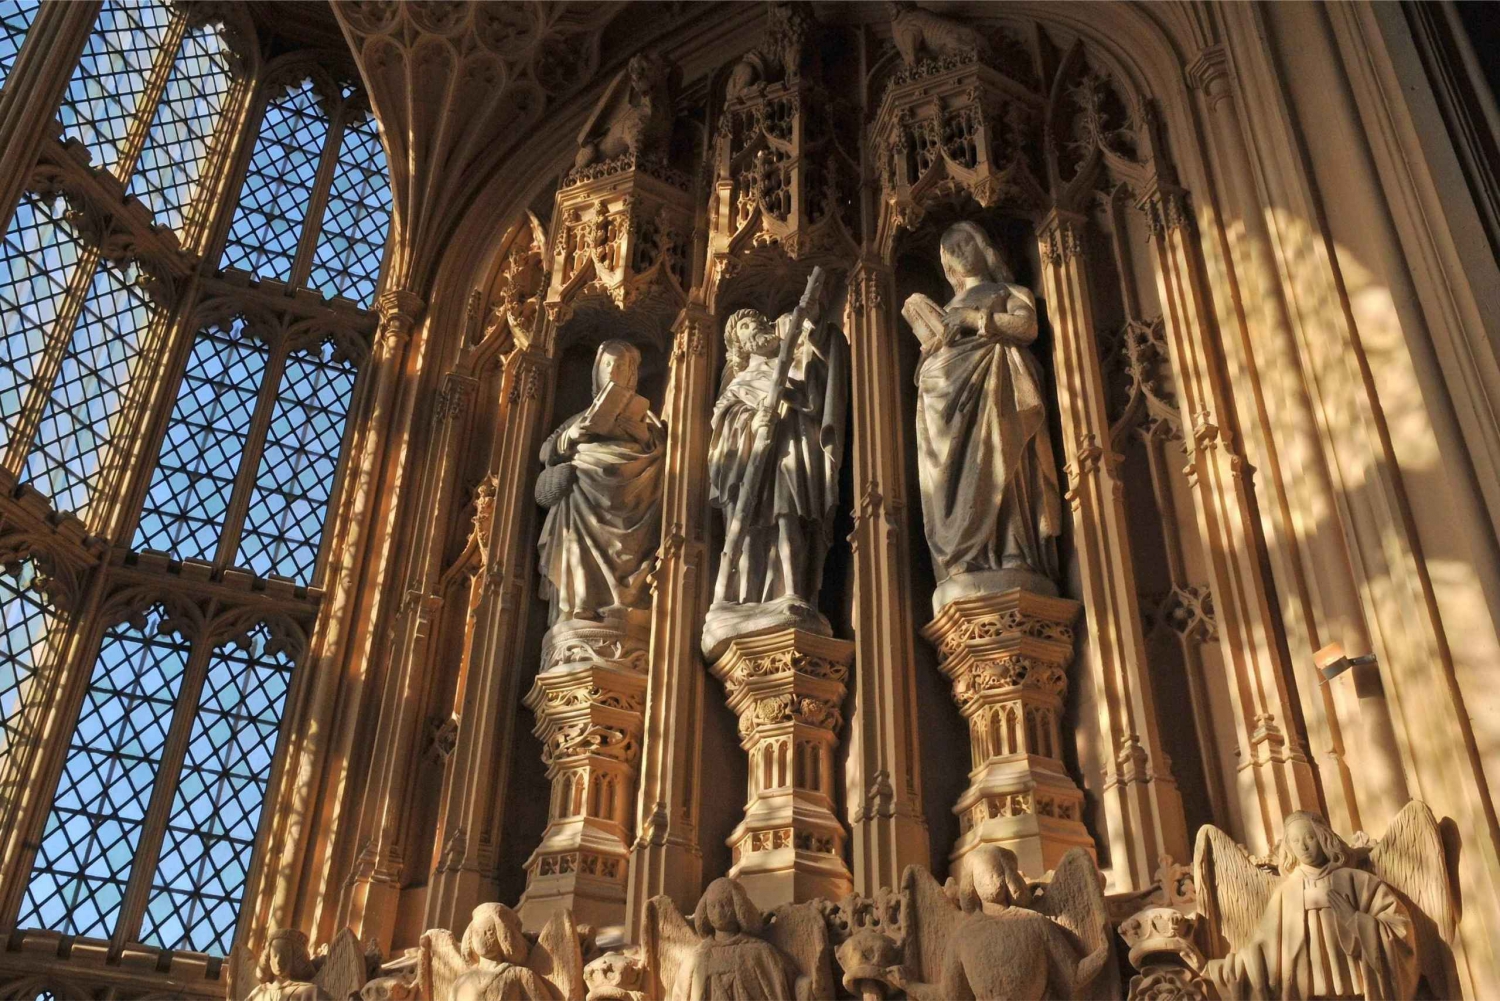 London: Biljett till Westminster Abbey med audioguide